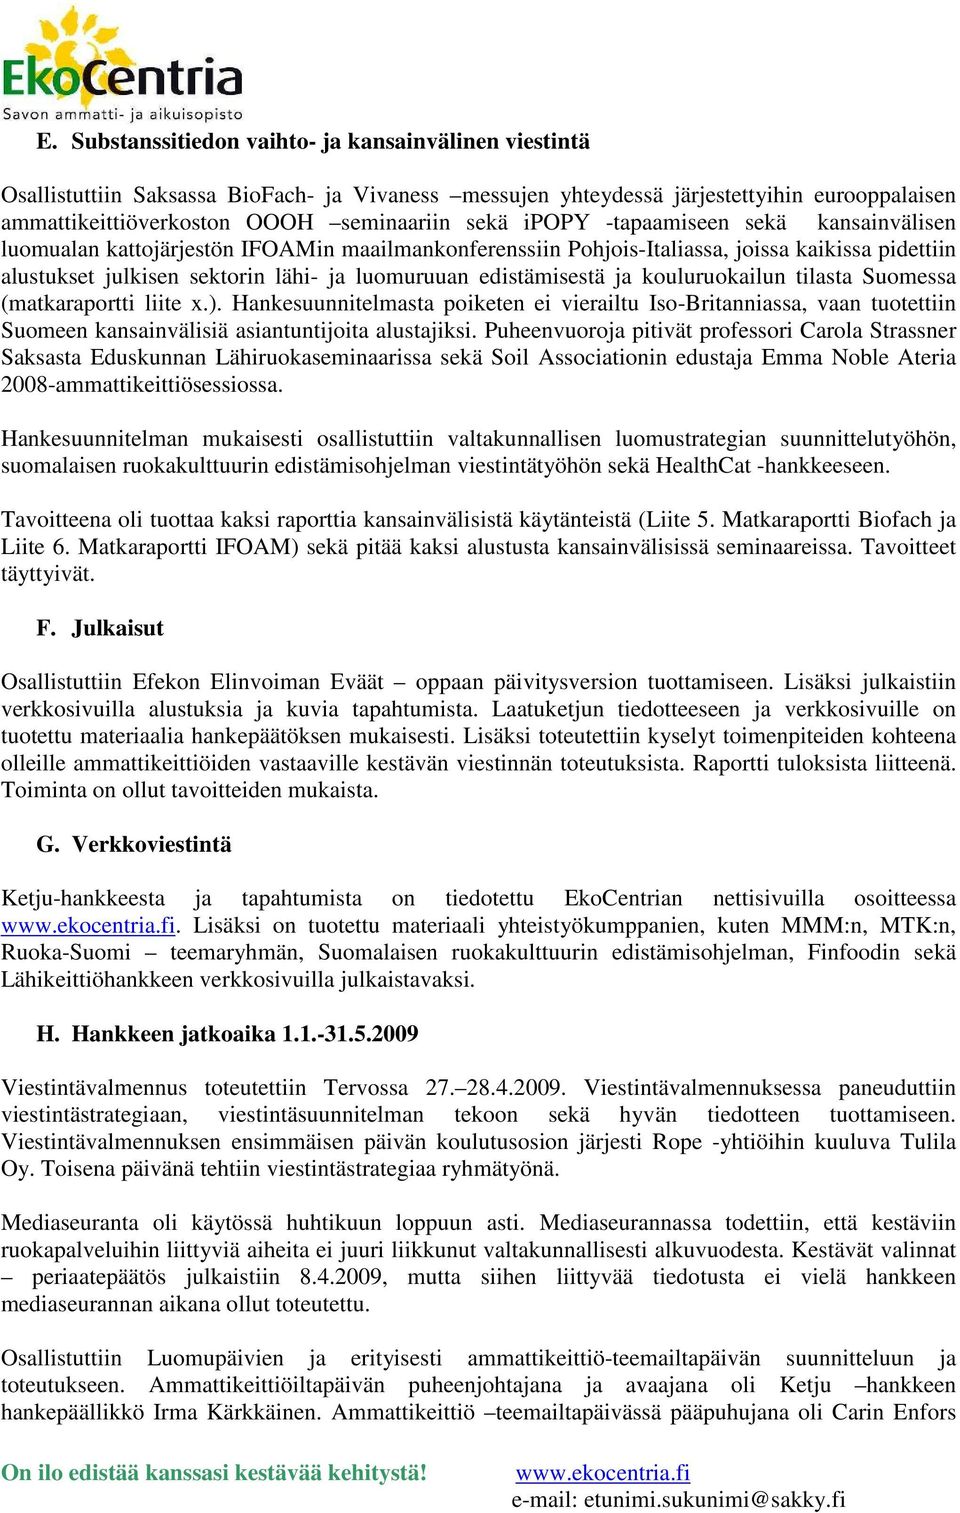 edistämisestä ja kouluruokailun tilasta Suomessa (matkaraportti liite x.).